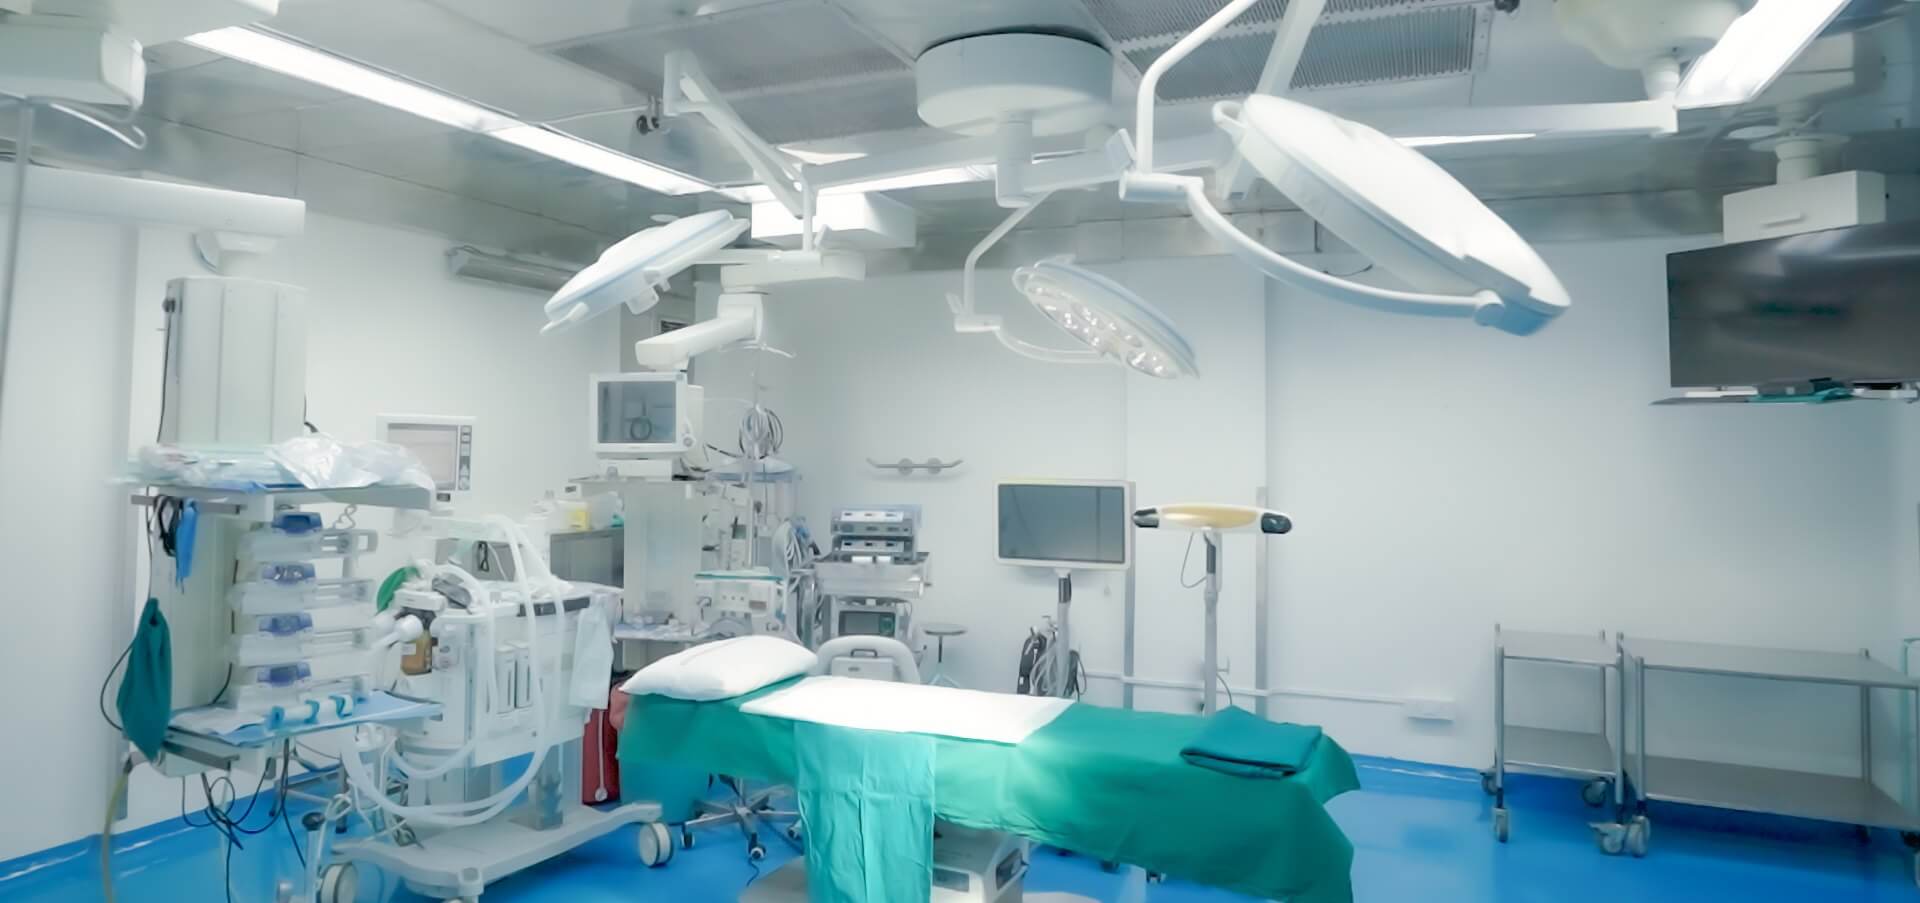 تجهیزات پزشکی مورد استفاده در بیمارستان